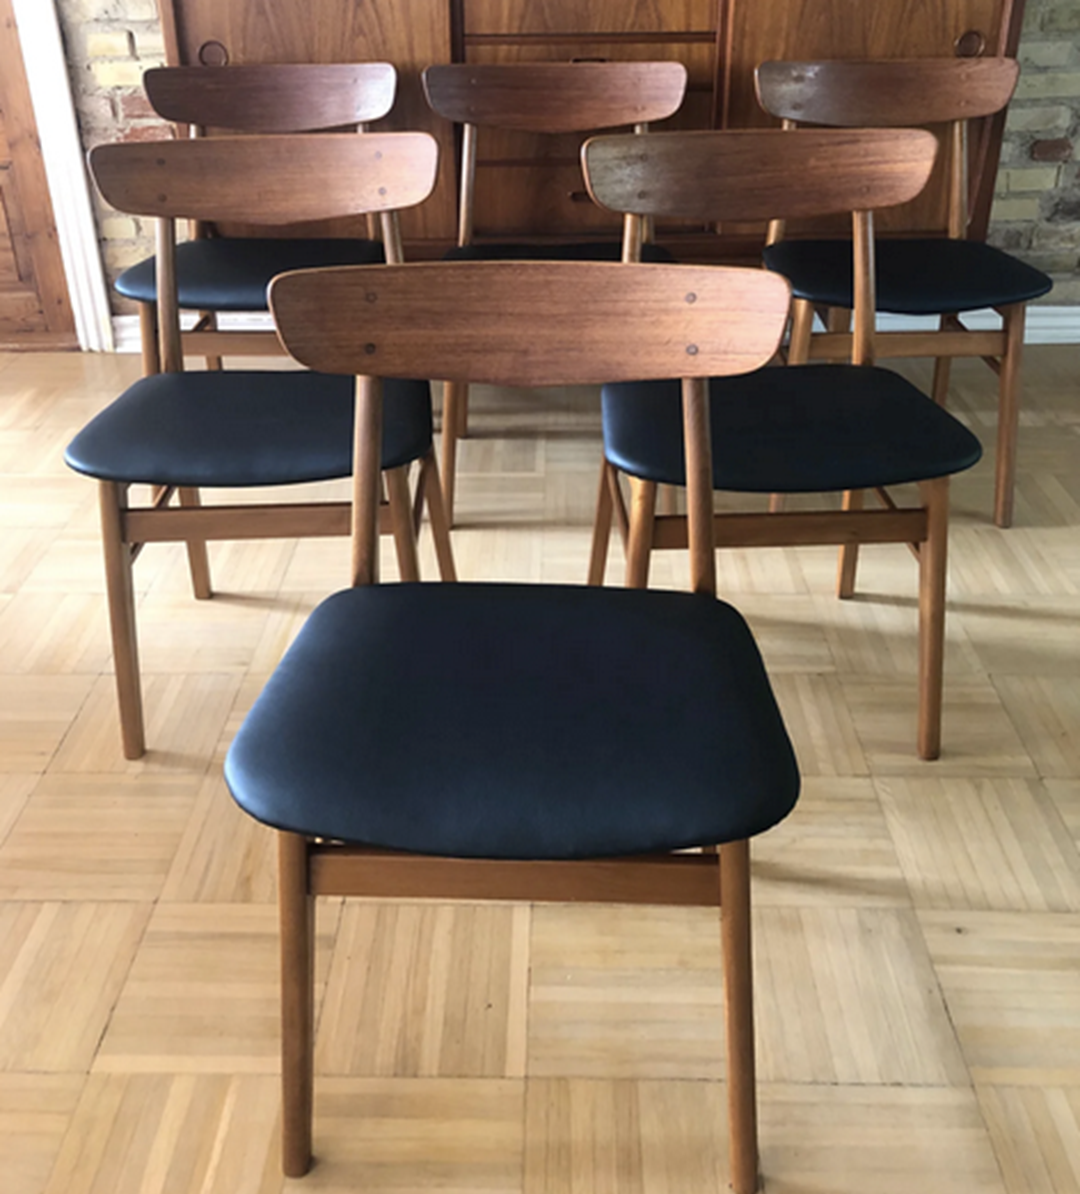 Anja fra Horsens sælger disse seks smukke spisebordsstol lavet af teaktræ. Hun vil have 3.300 kroner i bytte for dem alle seks.